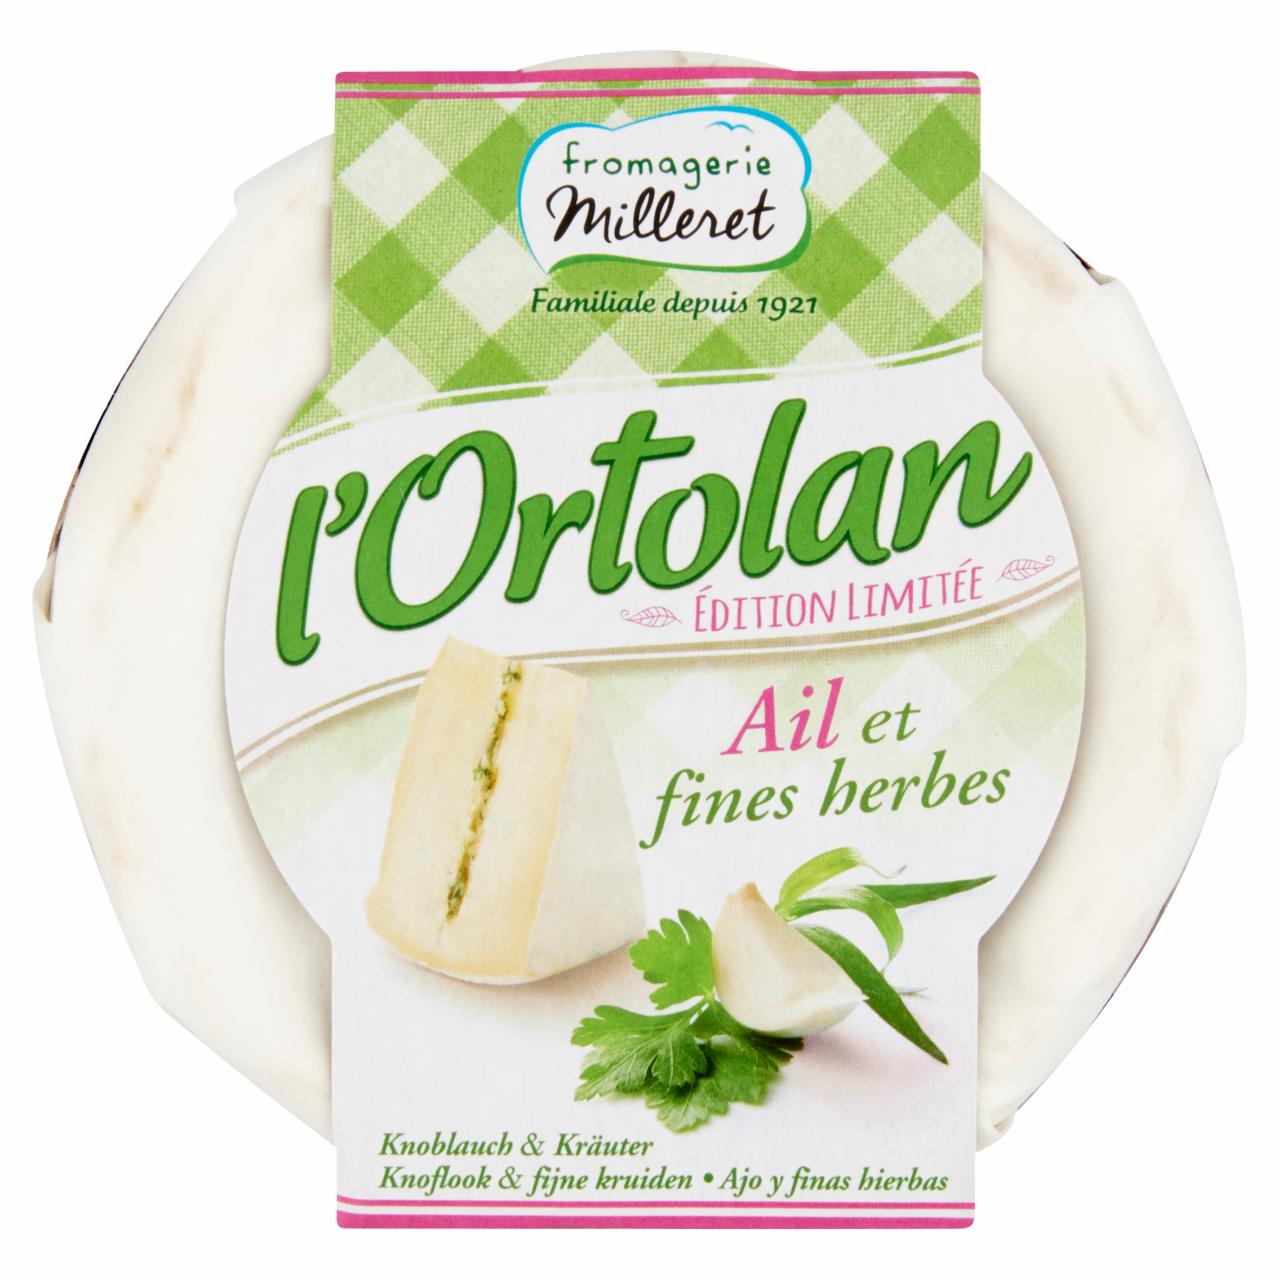 Képek - L'Ortolan zsíros, fehér nemespenésszel érő lágy sajt, fokhagymával és zöldfűszerekkel töltve 135 g